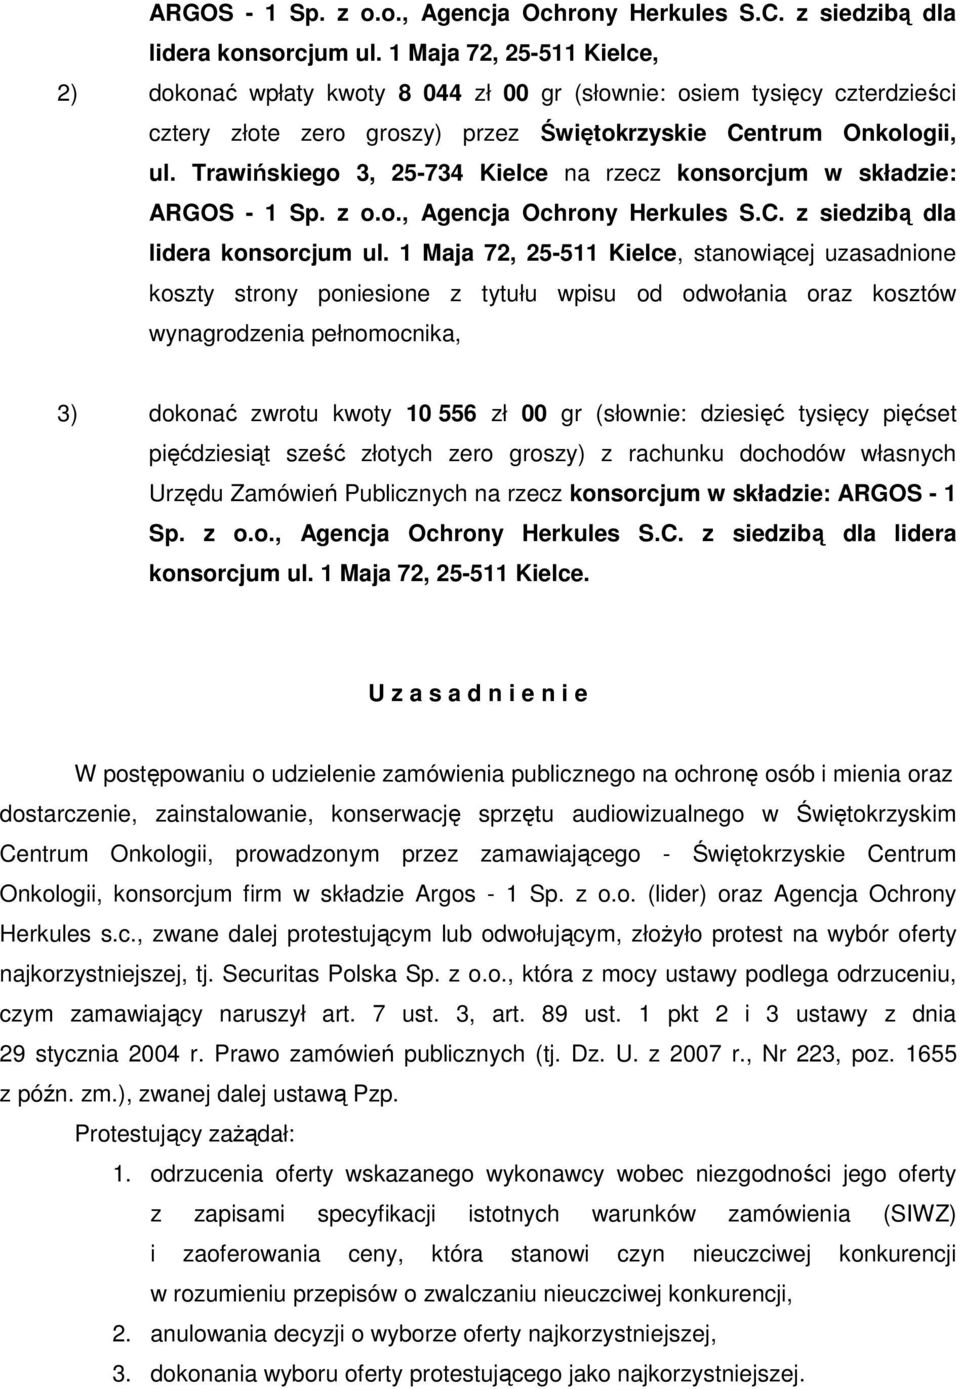 Trawińskiego 3, 25-734 Kielce na rzecz konsorcjum w składzie:  1 Maja 72, 25-511 Kielce, stanowiącej uzasadnione koszty strony poniesione z tytułu wpisu od odwołania oraz kosztów wynagrodzenia